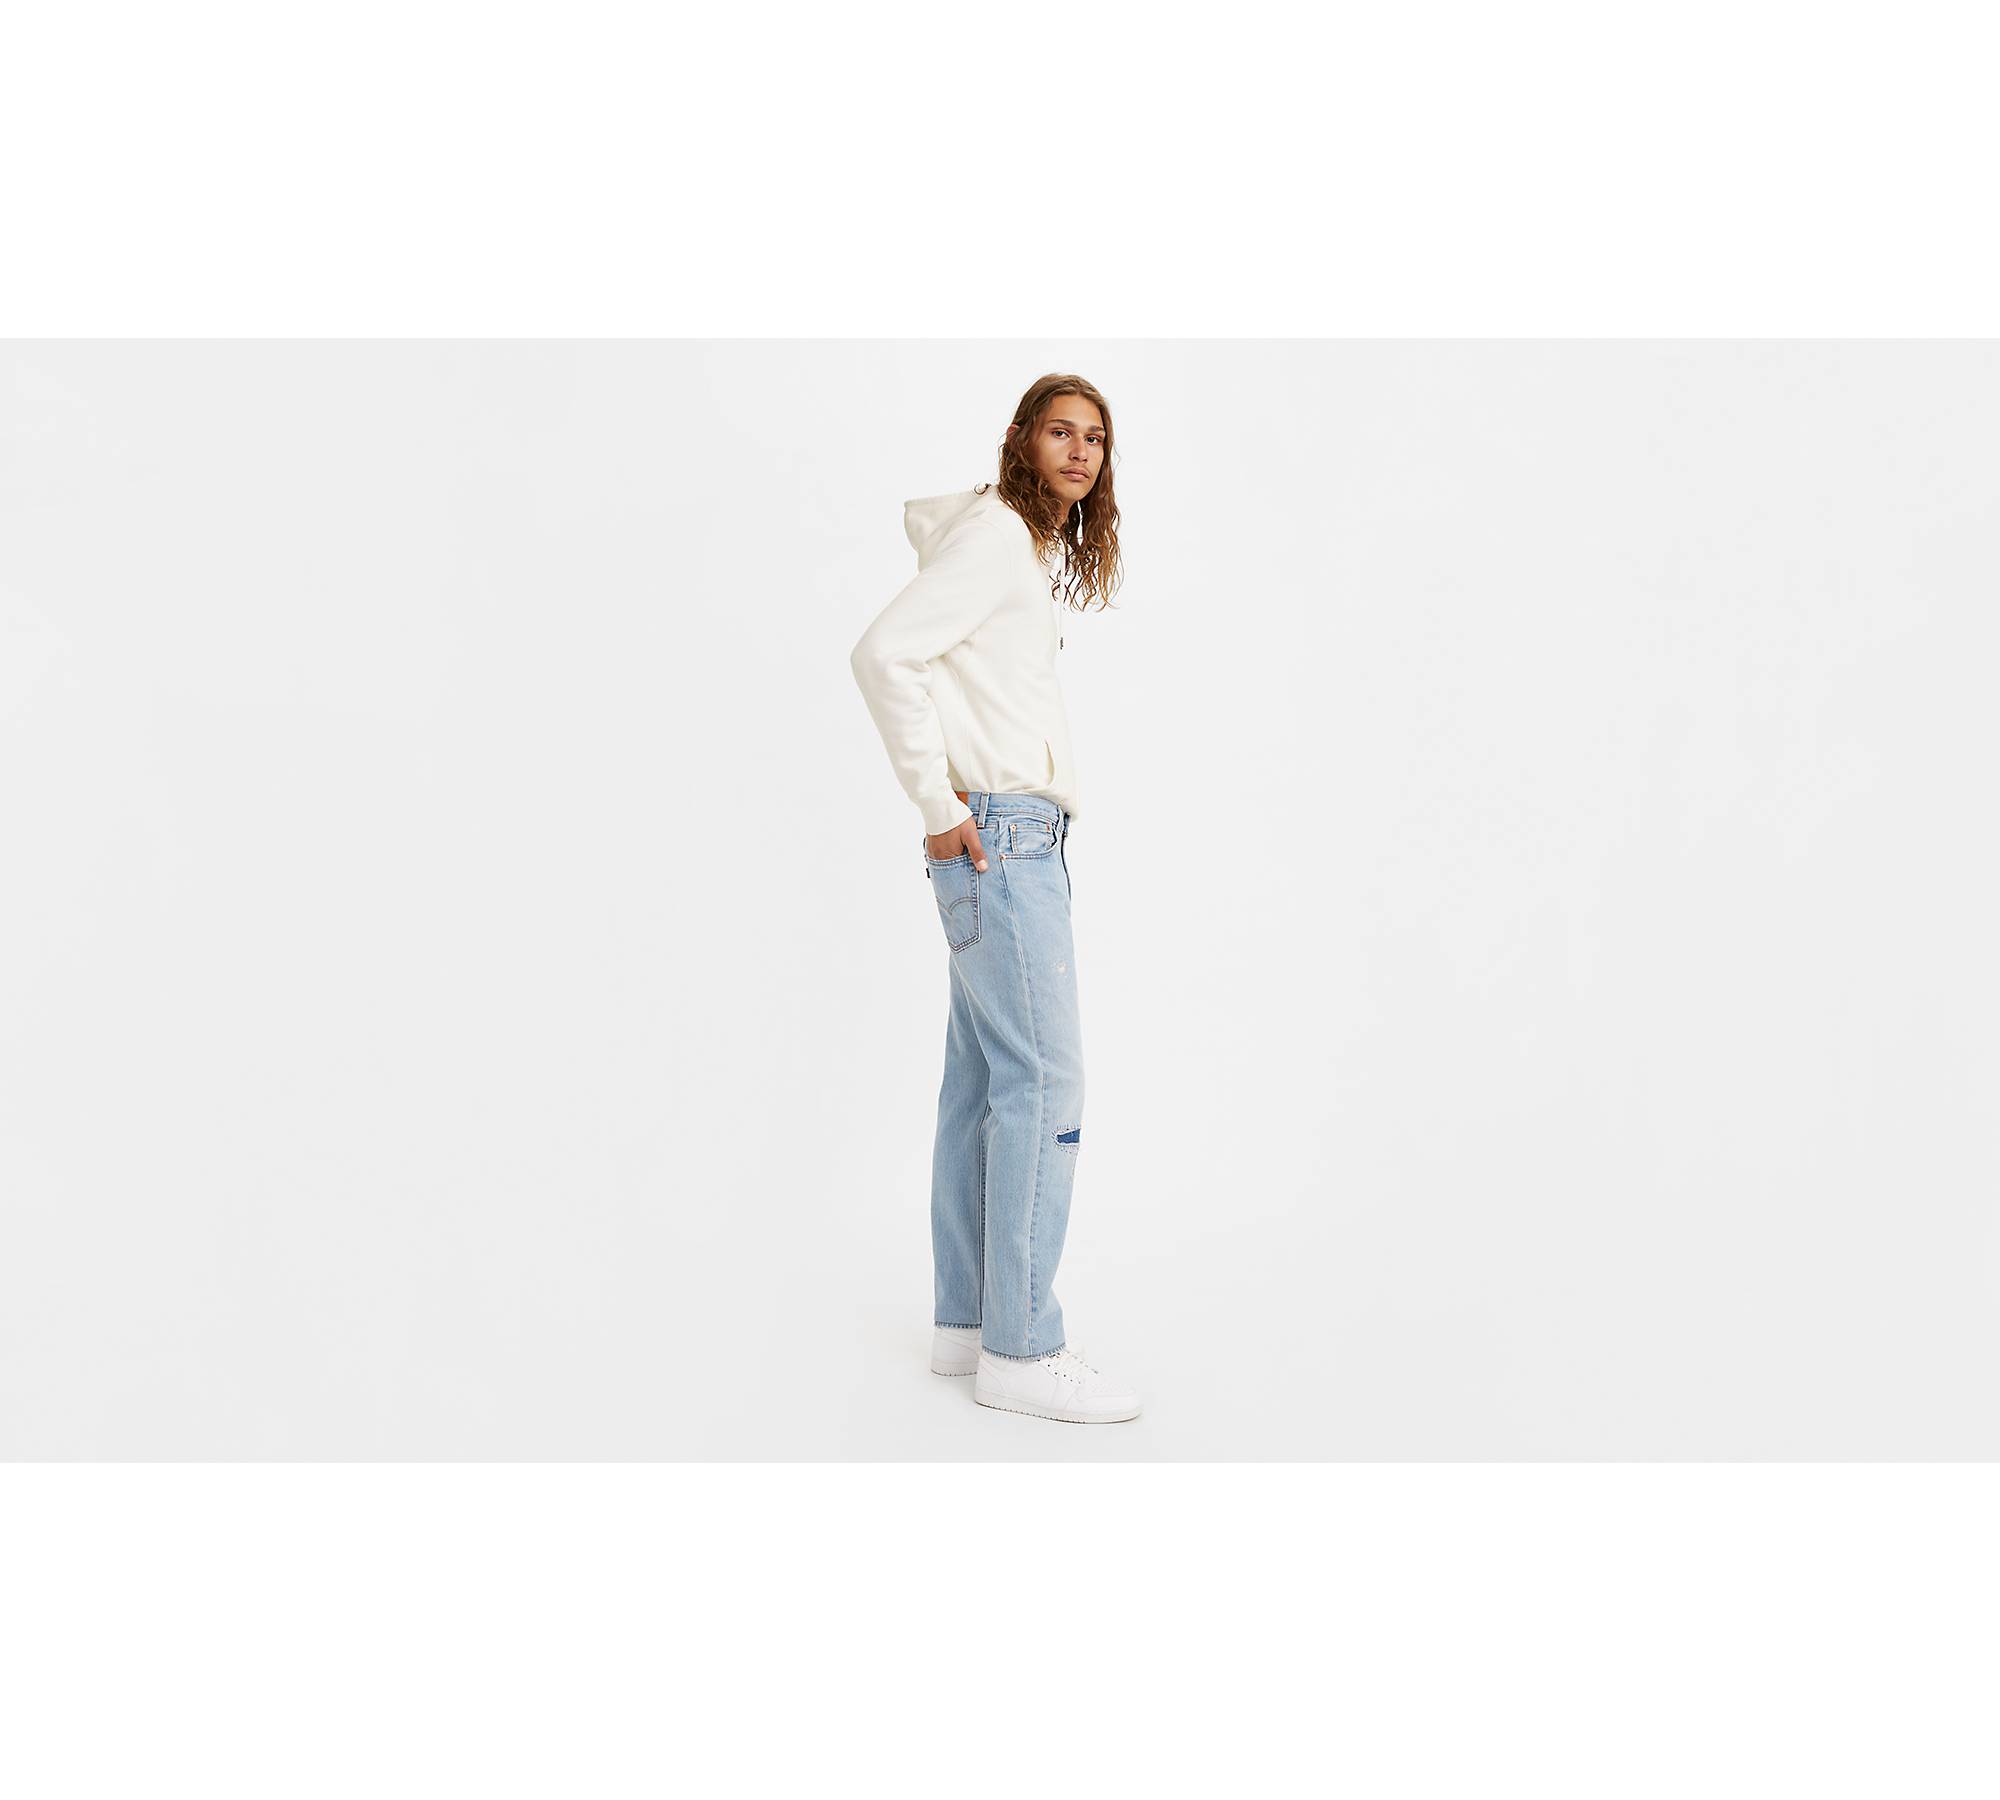 551™z Authentic Straight Fit Men's Jeans - Medium Wash | Levi's® US